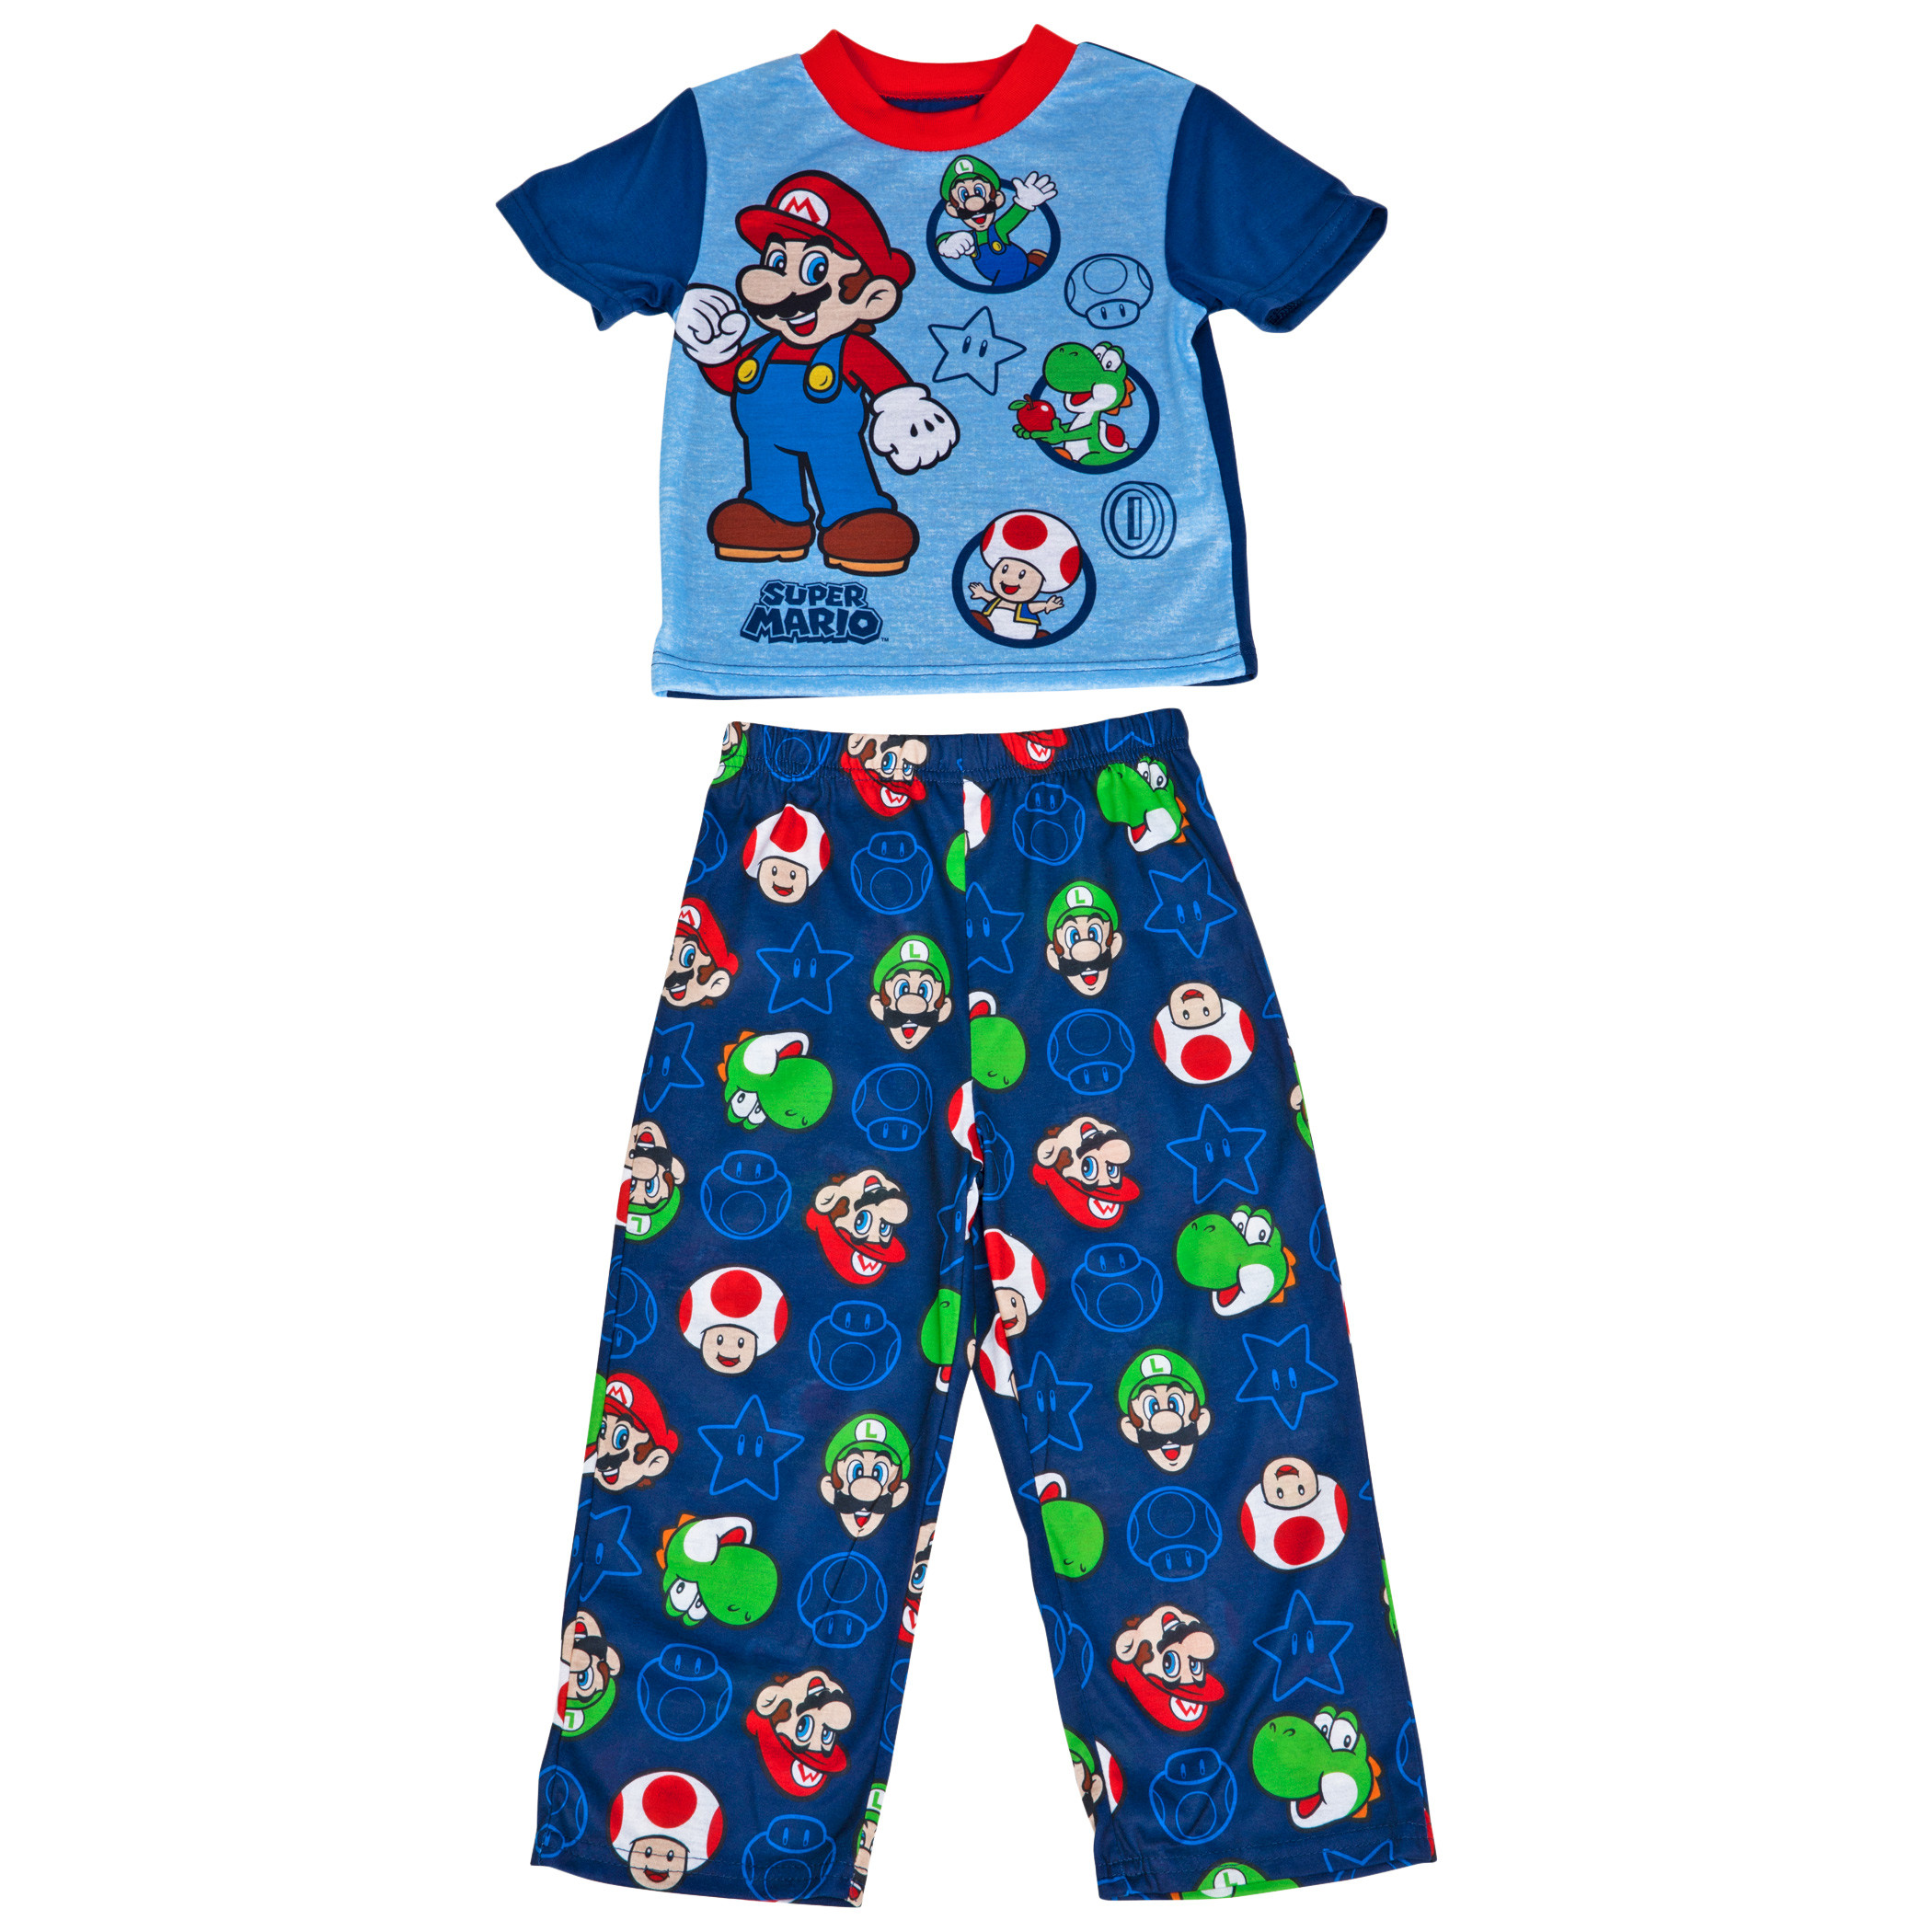 Nintendo Super Mario Bros. Characters AOP 2-Piece Pajama Set